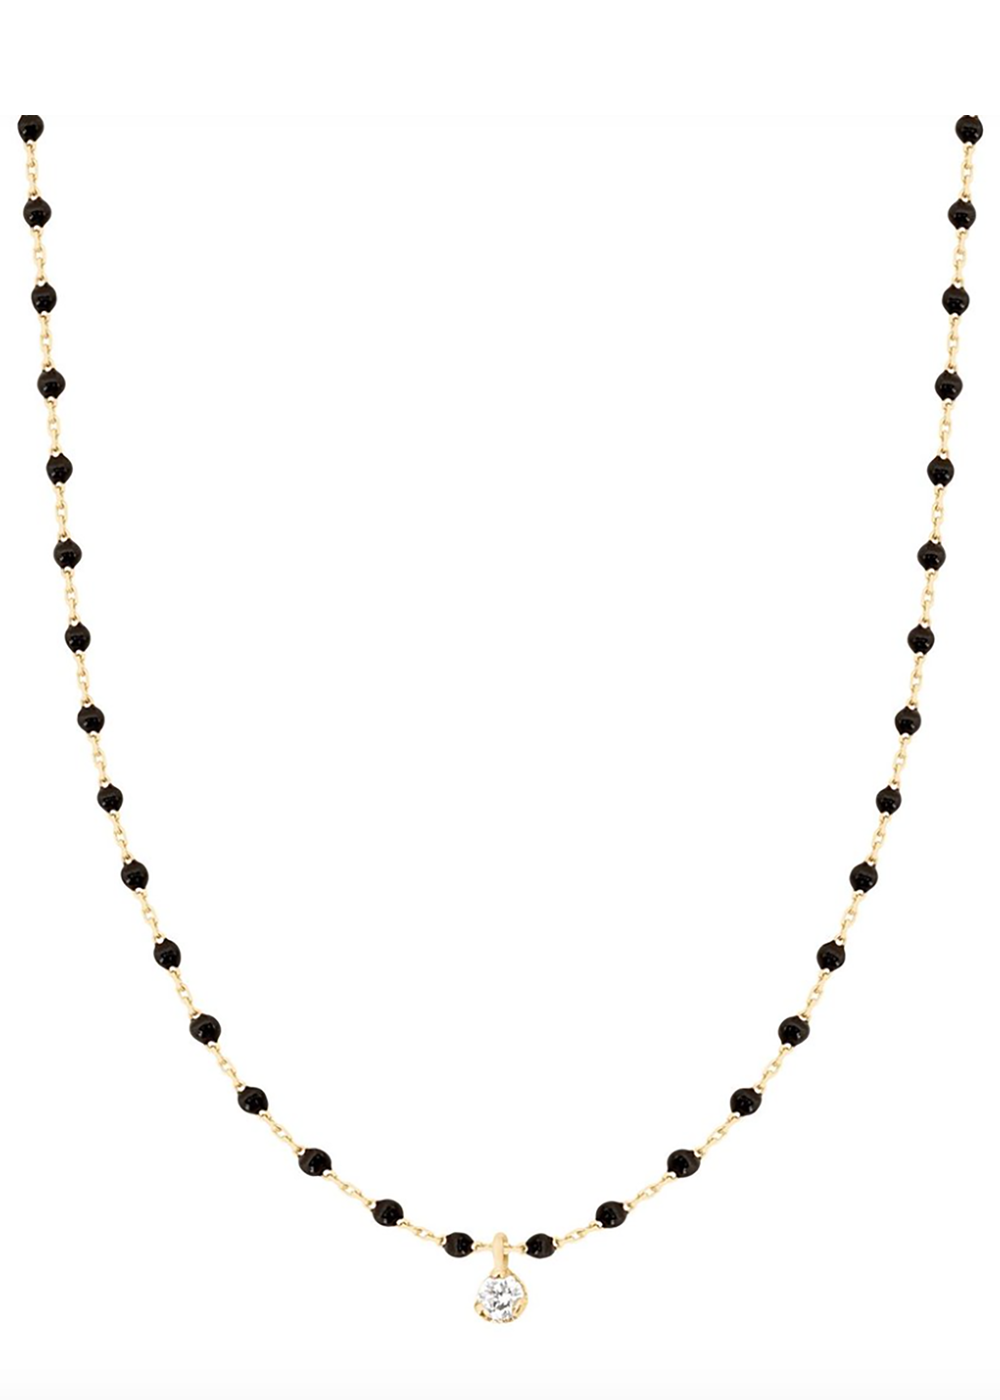 gigiClozeau necklace with Diamond |Black|